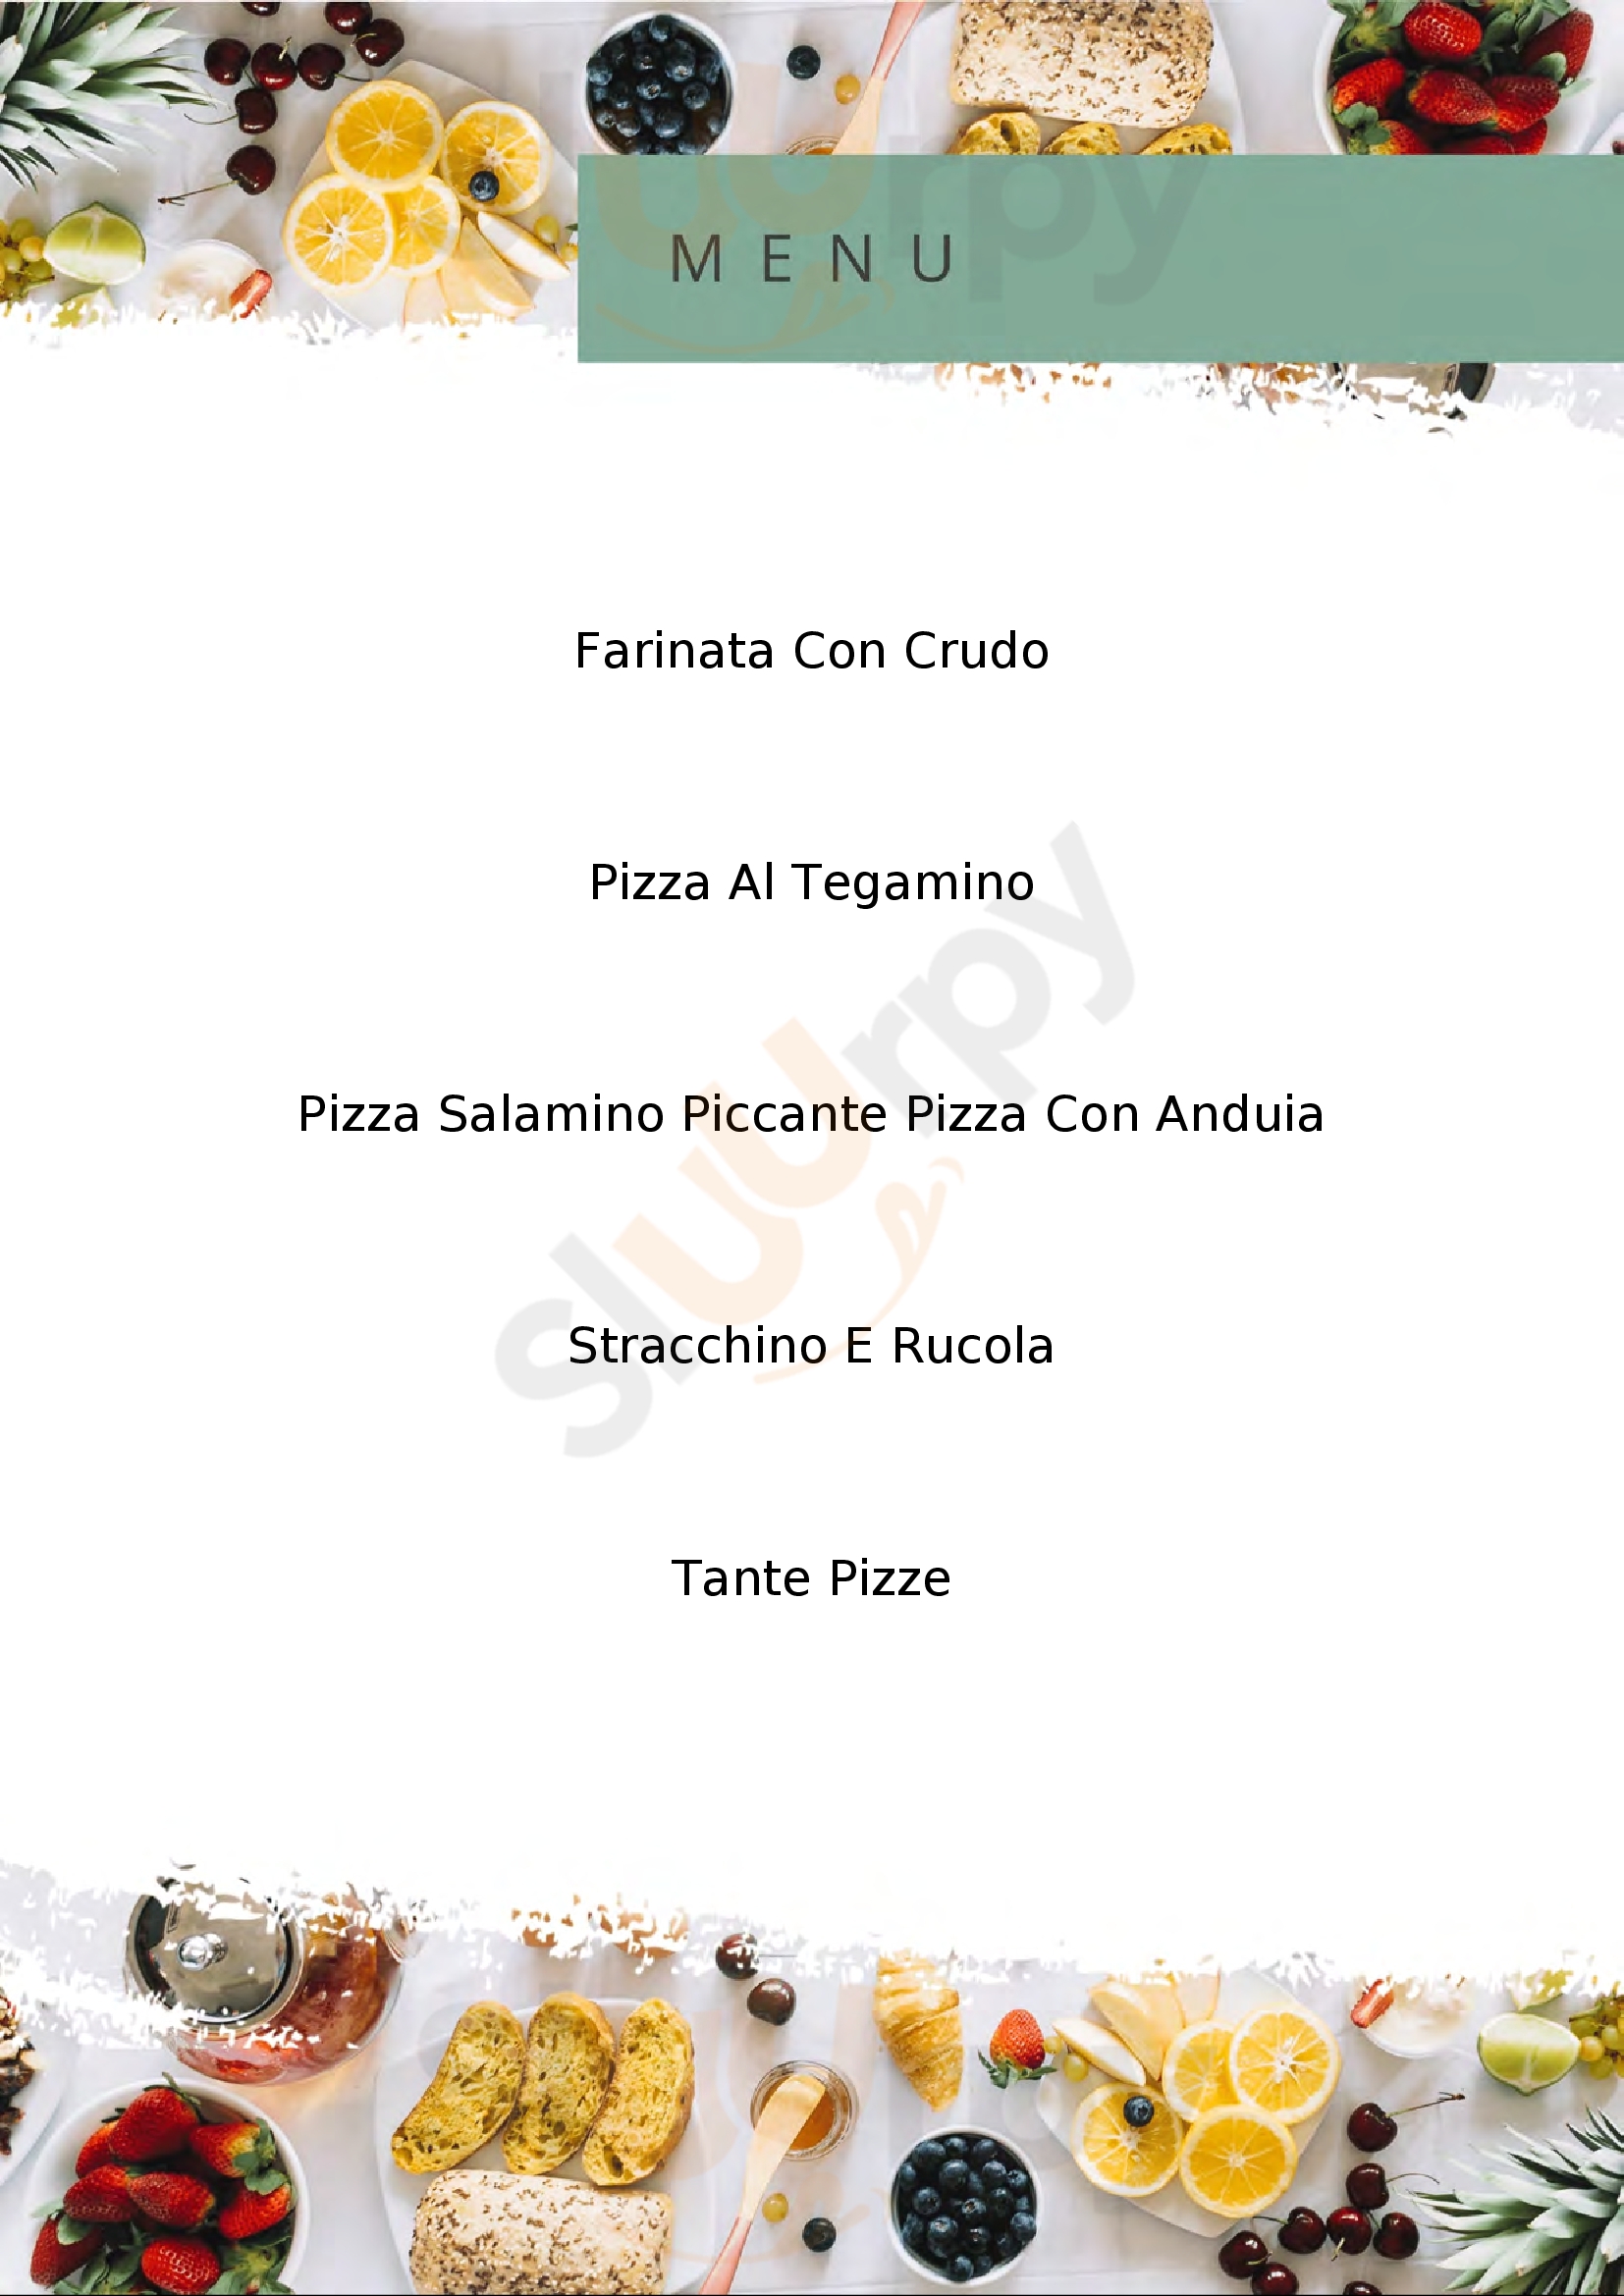 Pizzeria Michelangelo Grugliasco menù 1 pagina